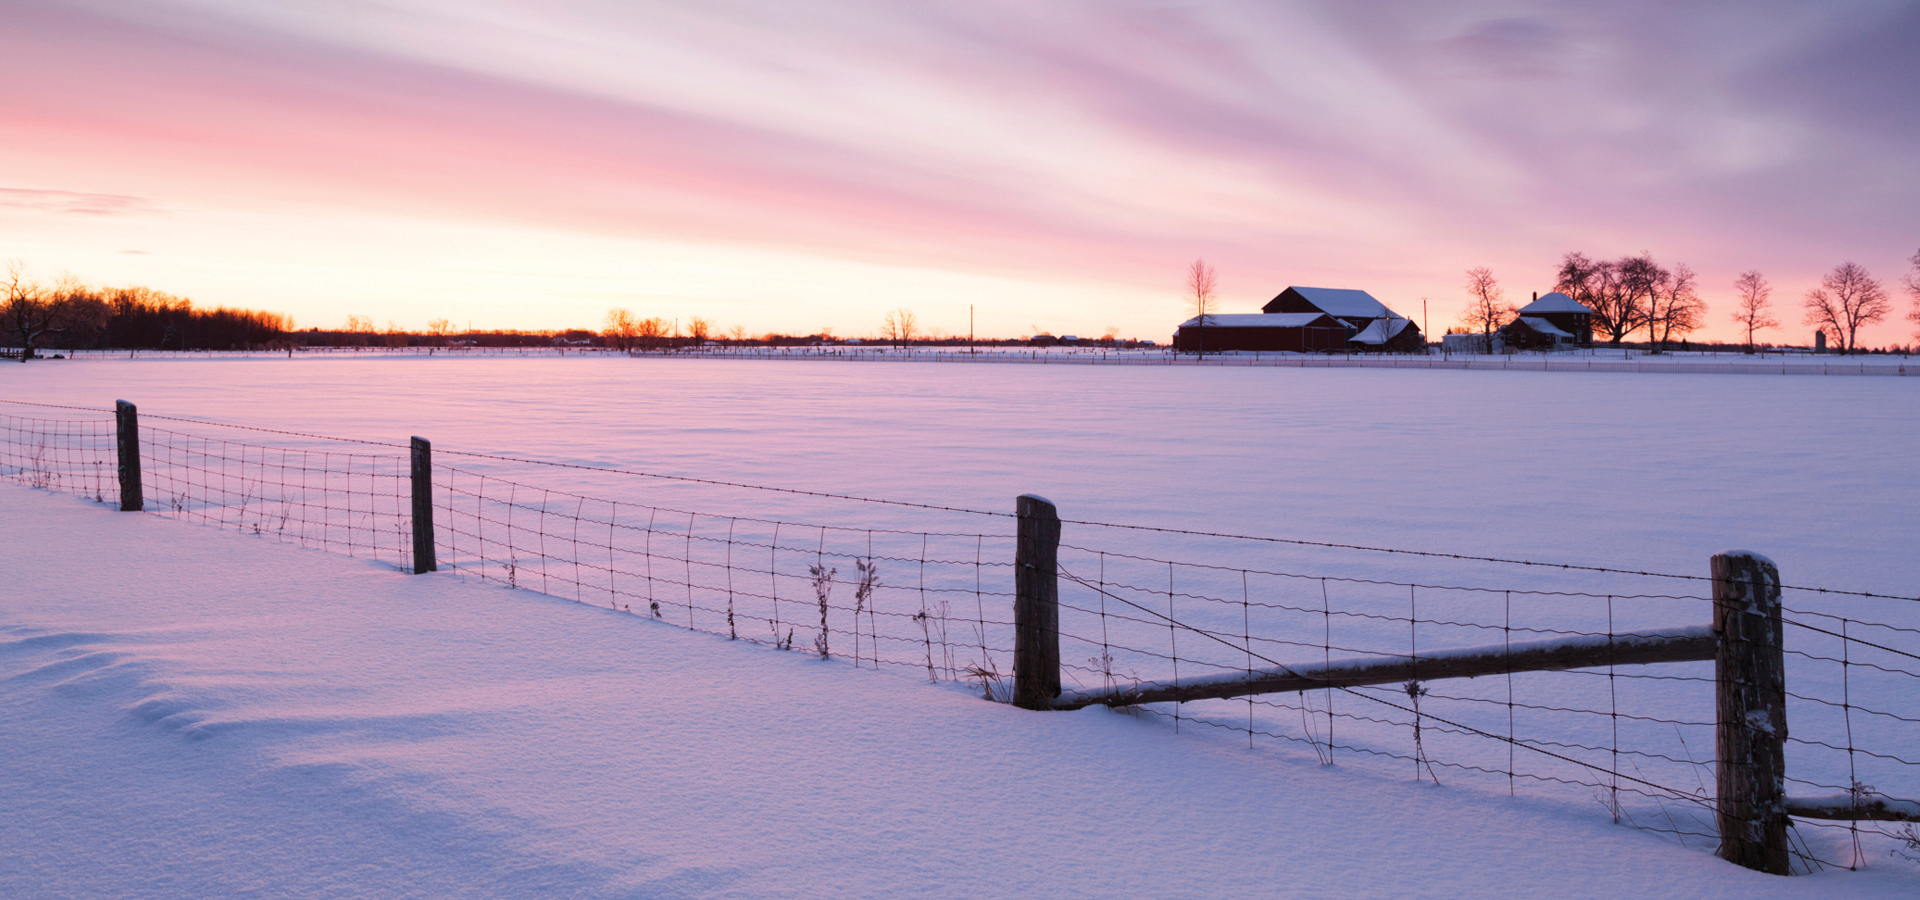 Winter farm scene